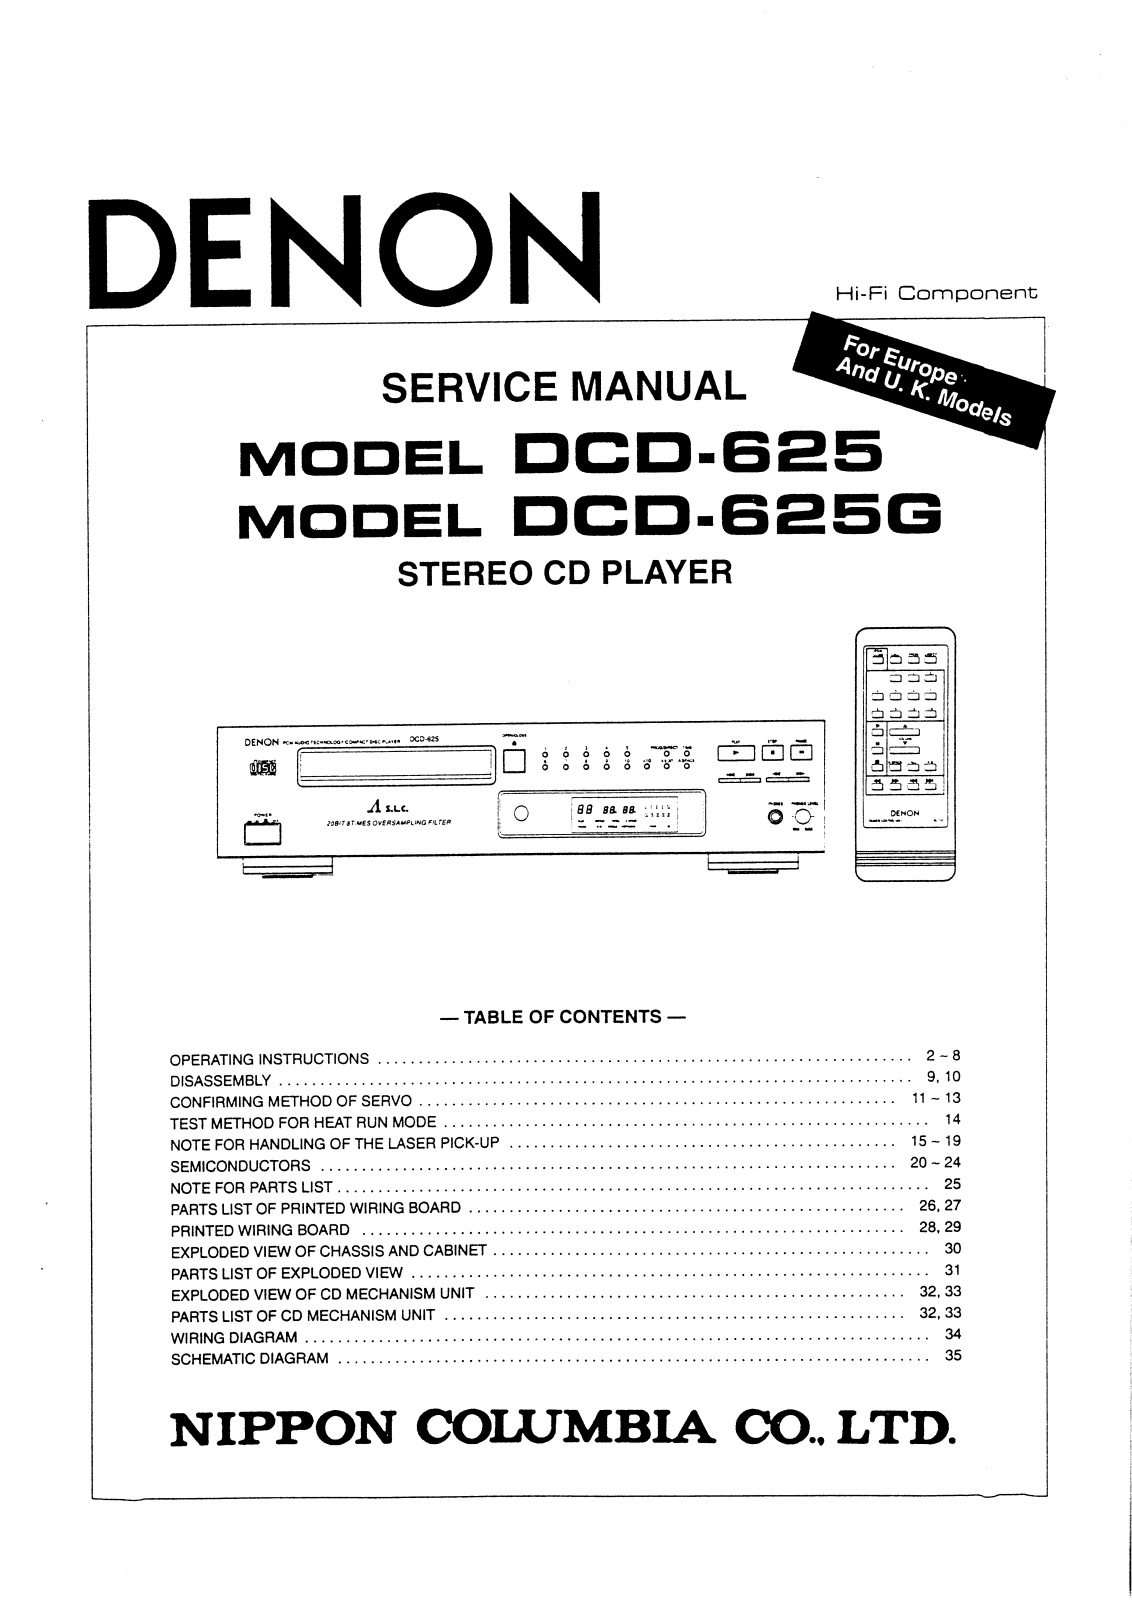 Denon DCD-625 G Service Manual